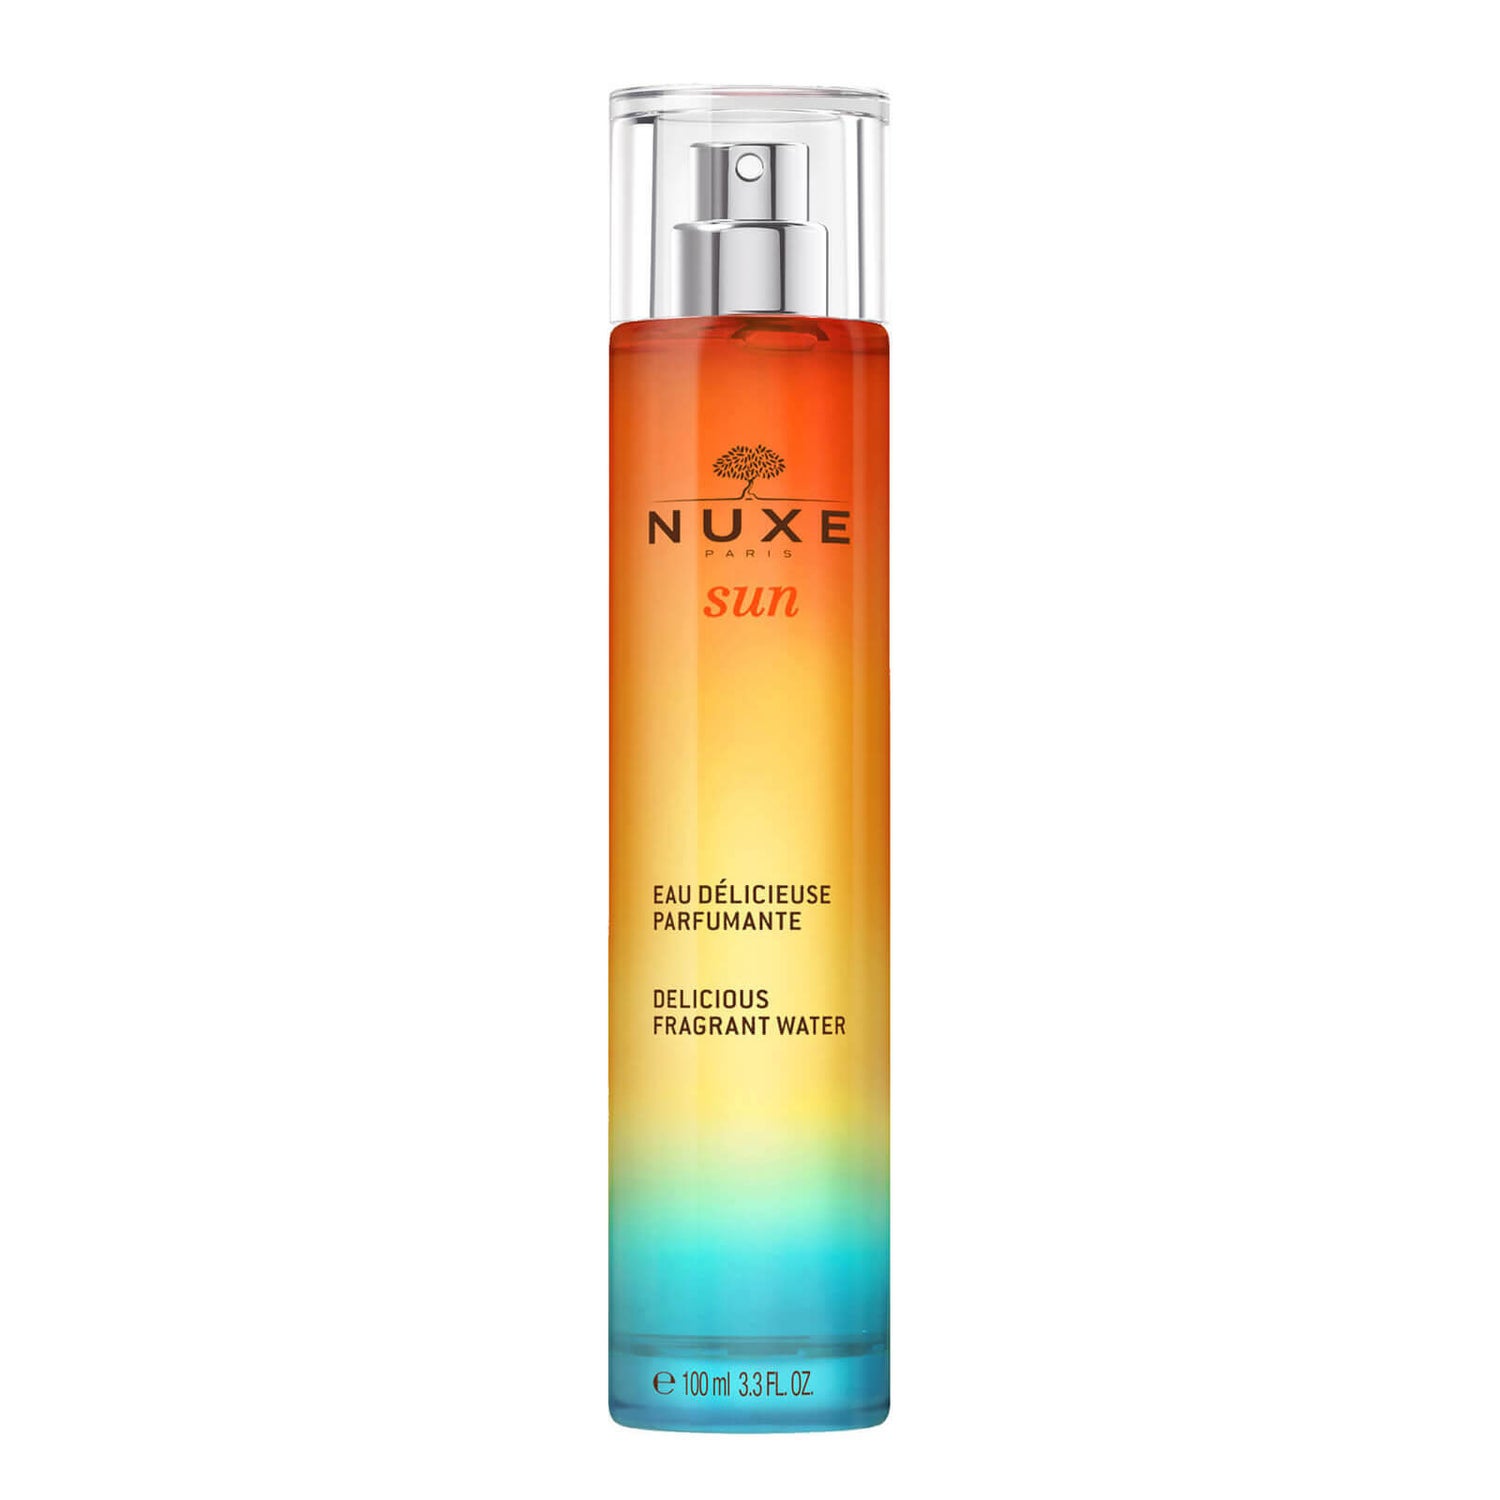 Agua Deliciosa Perfumada, NUXE Sun 100ml